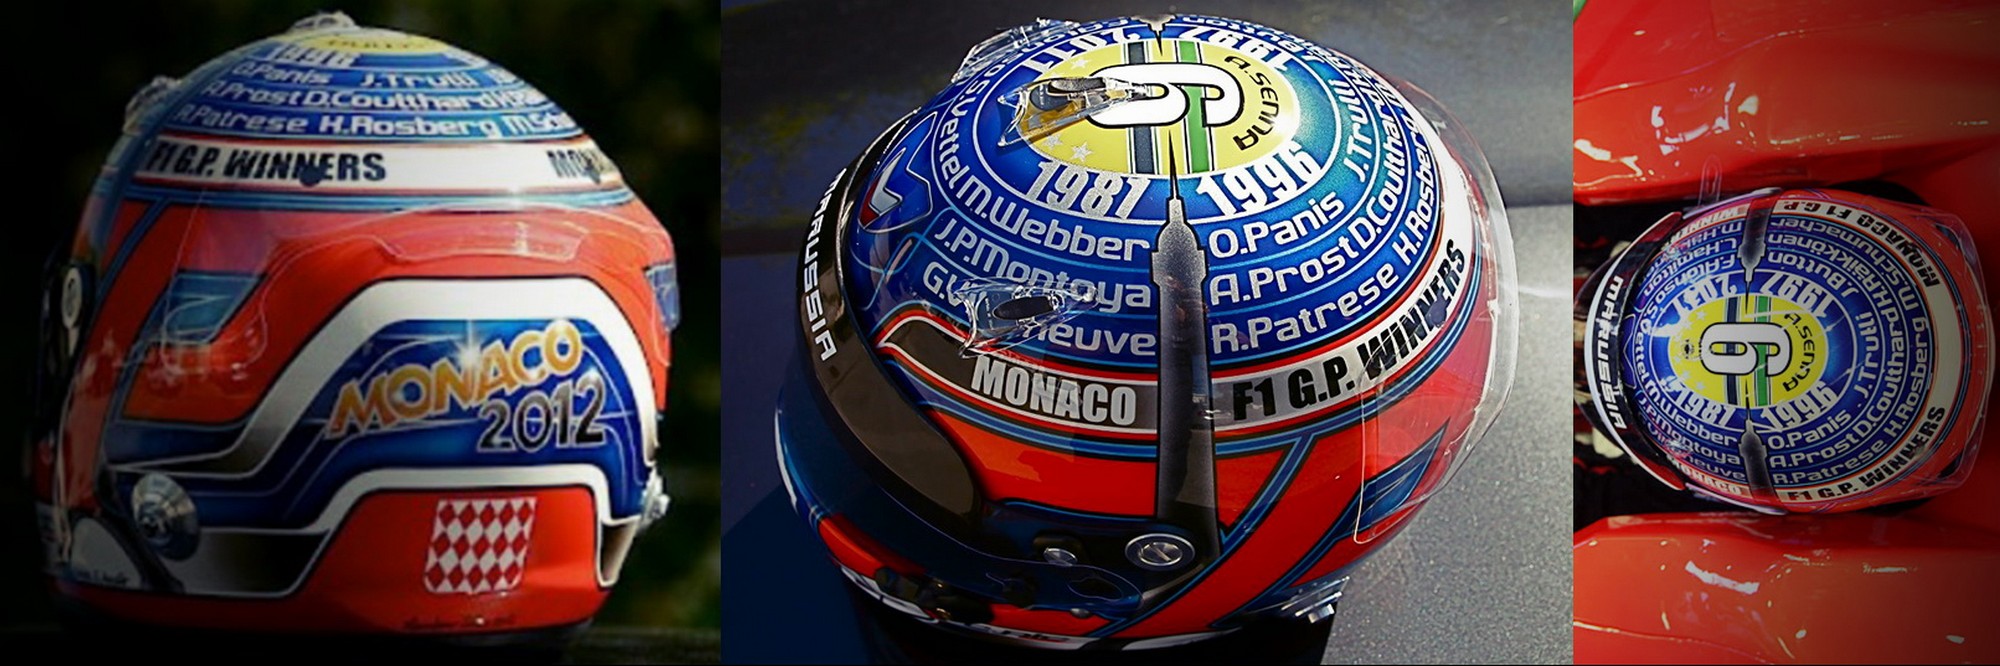 Шлем Шарля Пика на Гран-При Монако 2012 | 2012 Monaco Grand Prix helmet of Charles Pic